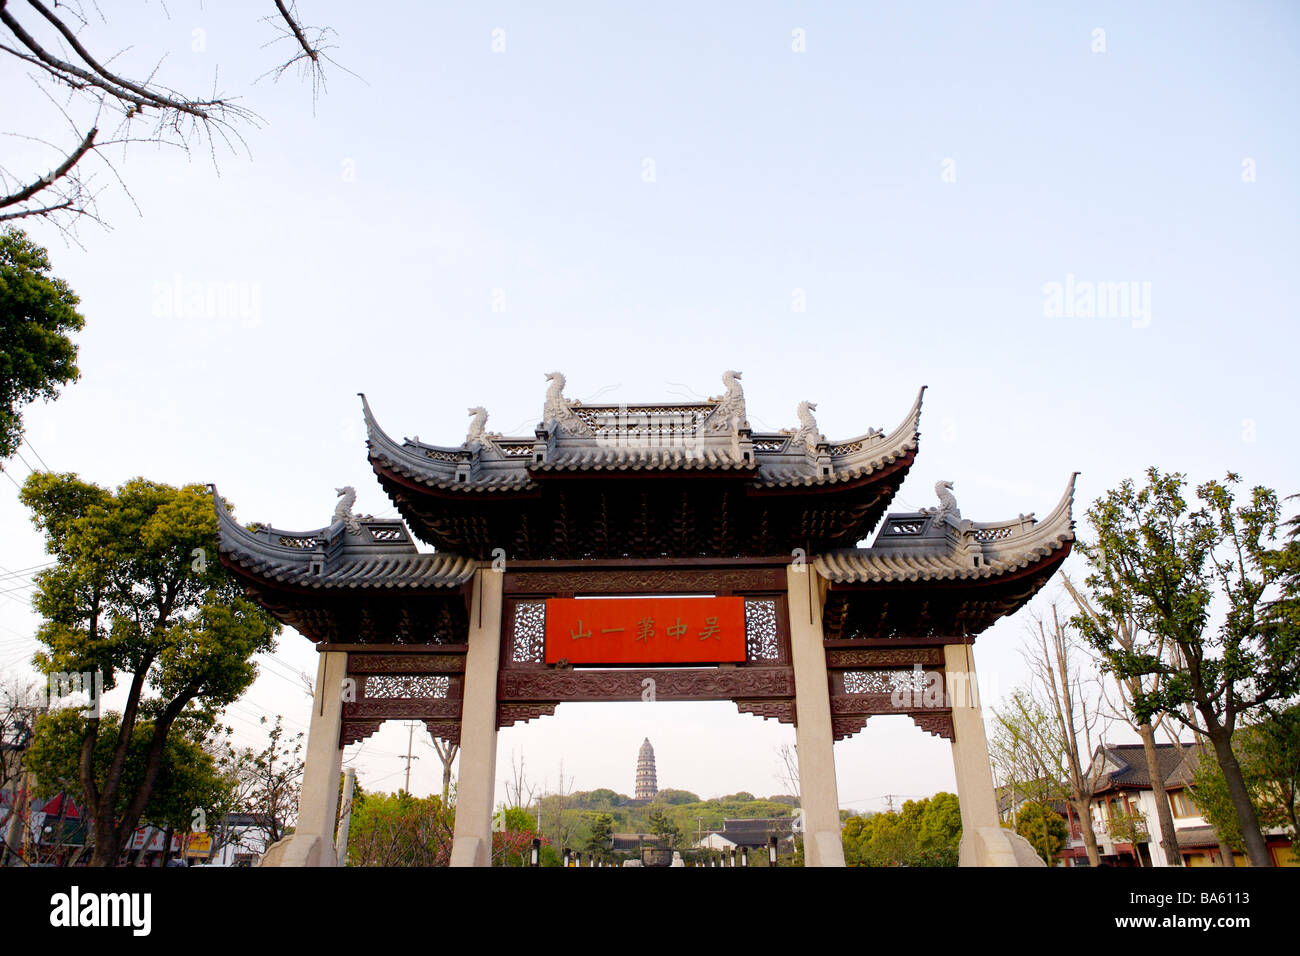 Cina provincia dello Jiangsu Suzhou Tiger Hill Pagoda attraverso memorial archway Foto Stock